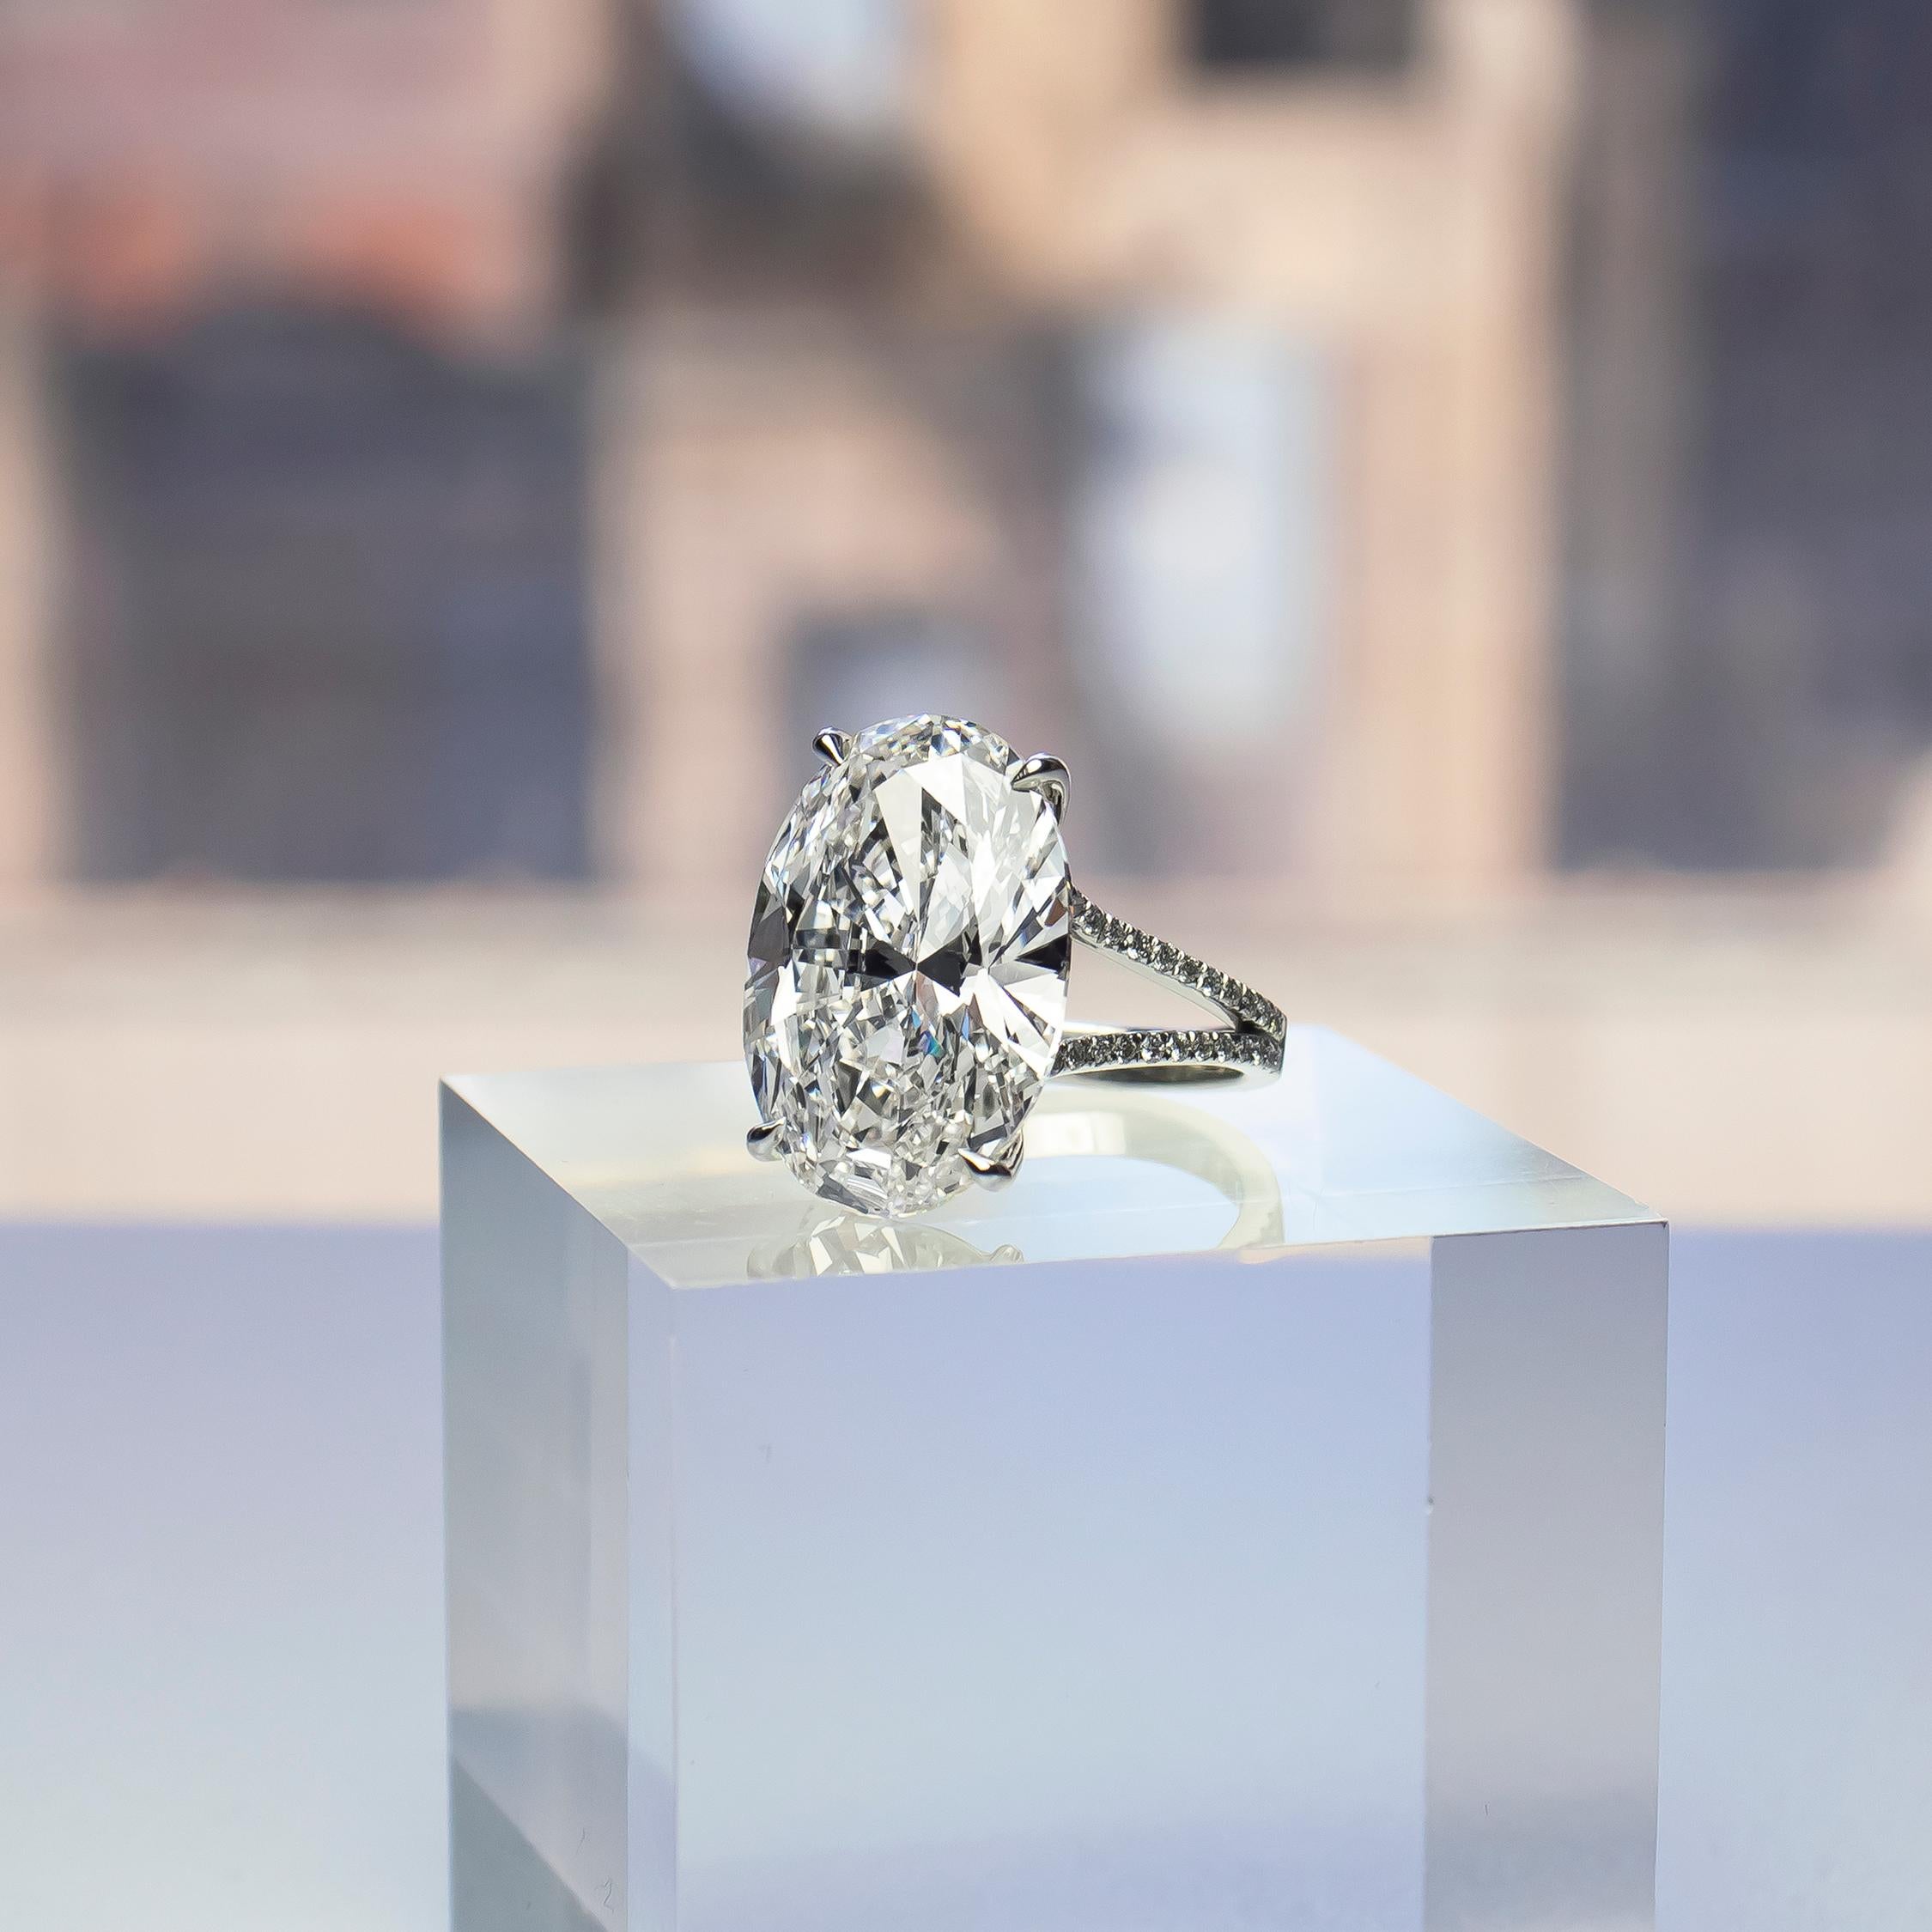 Dieser außergewöhnliche Ring aus dem Tresor von J. Birnbach enthält einen natürlichen, zertifizierten Diamanten von 14,06 Karat im ovalen Brillantschliff mit der Farbe H und der Reinheit VVS2, wie im GIA-Gutachten #6224709419 beschrieben. Dieser